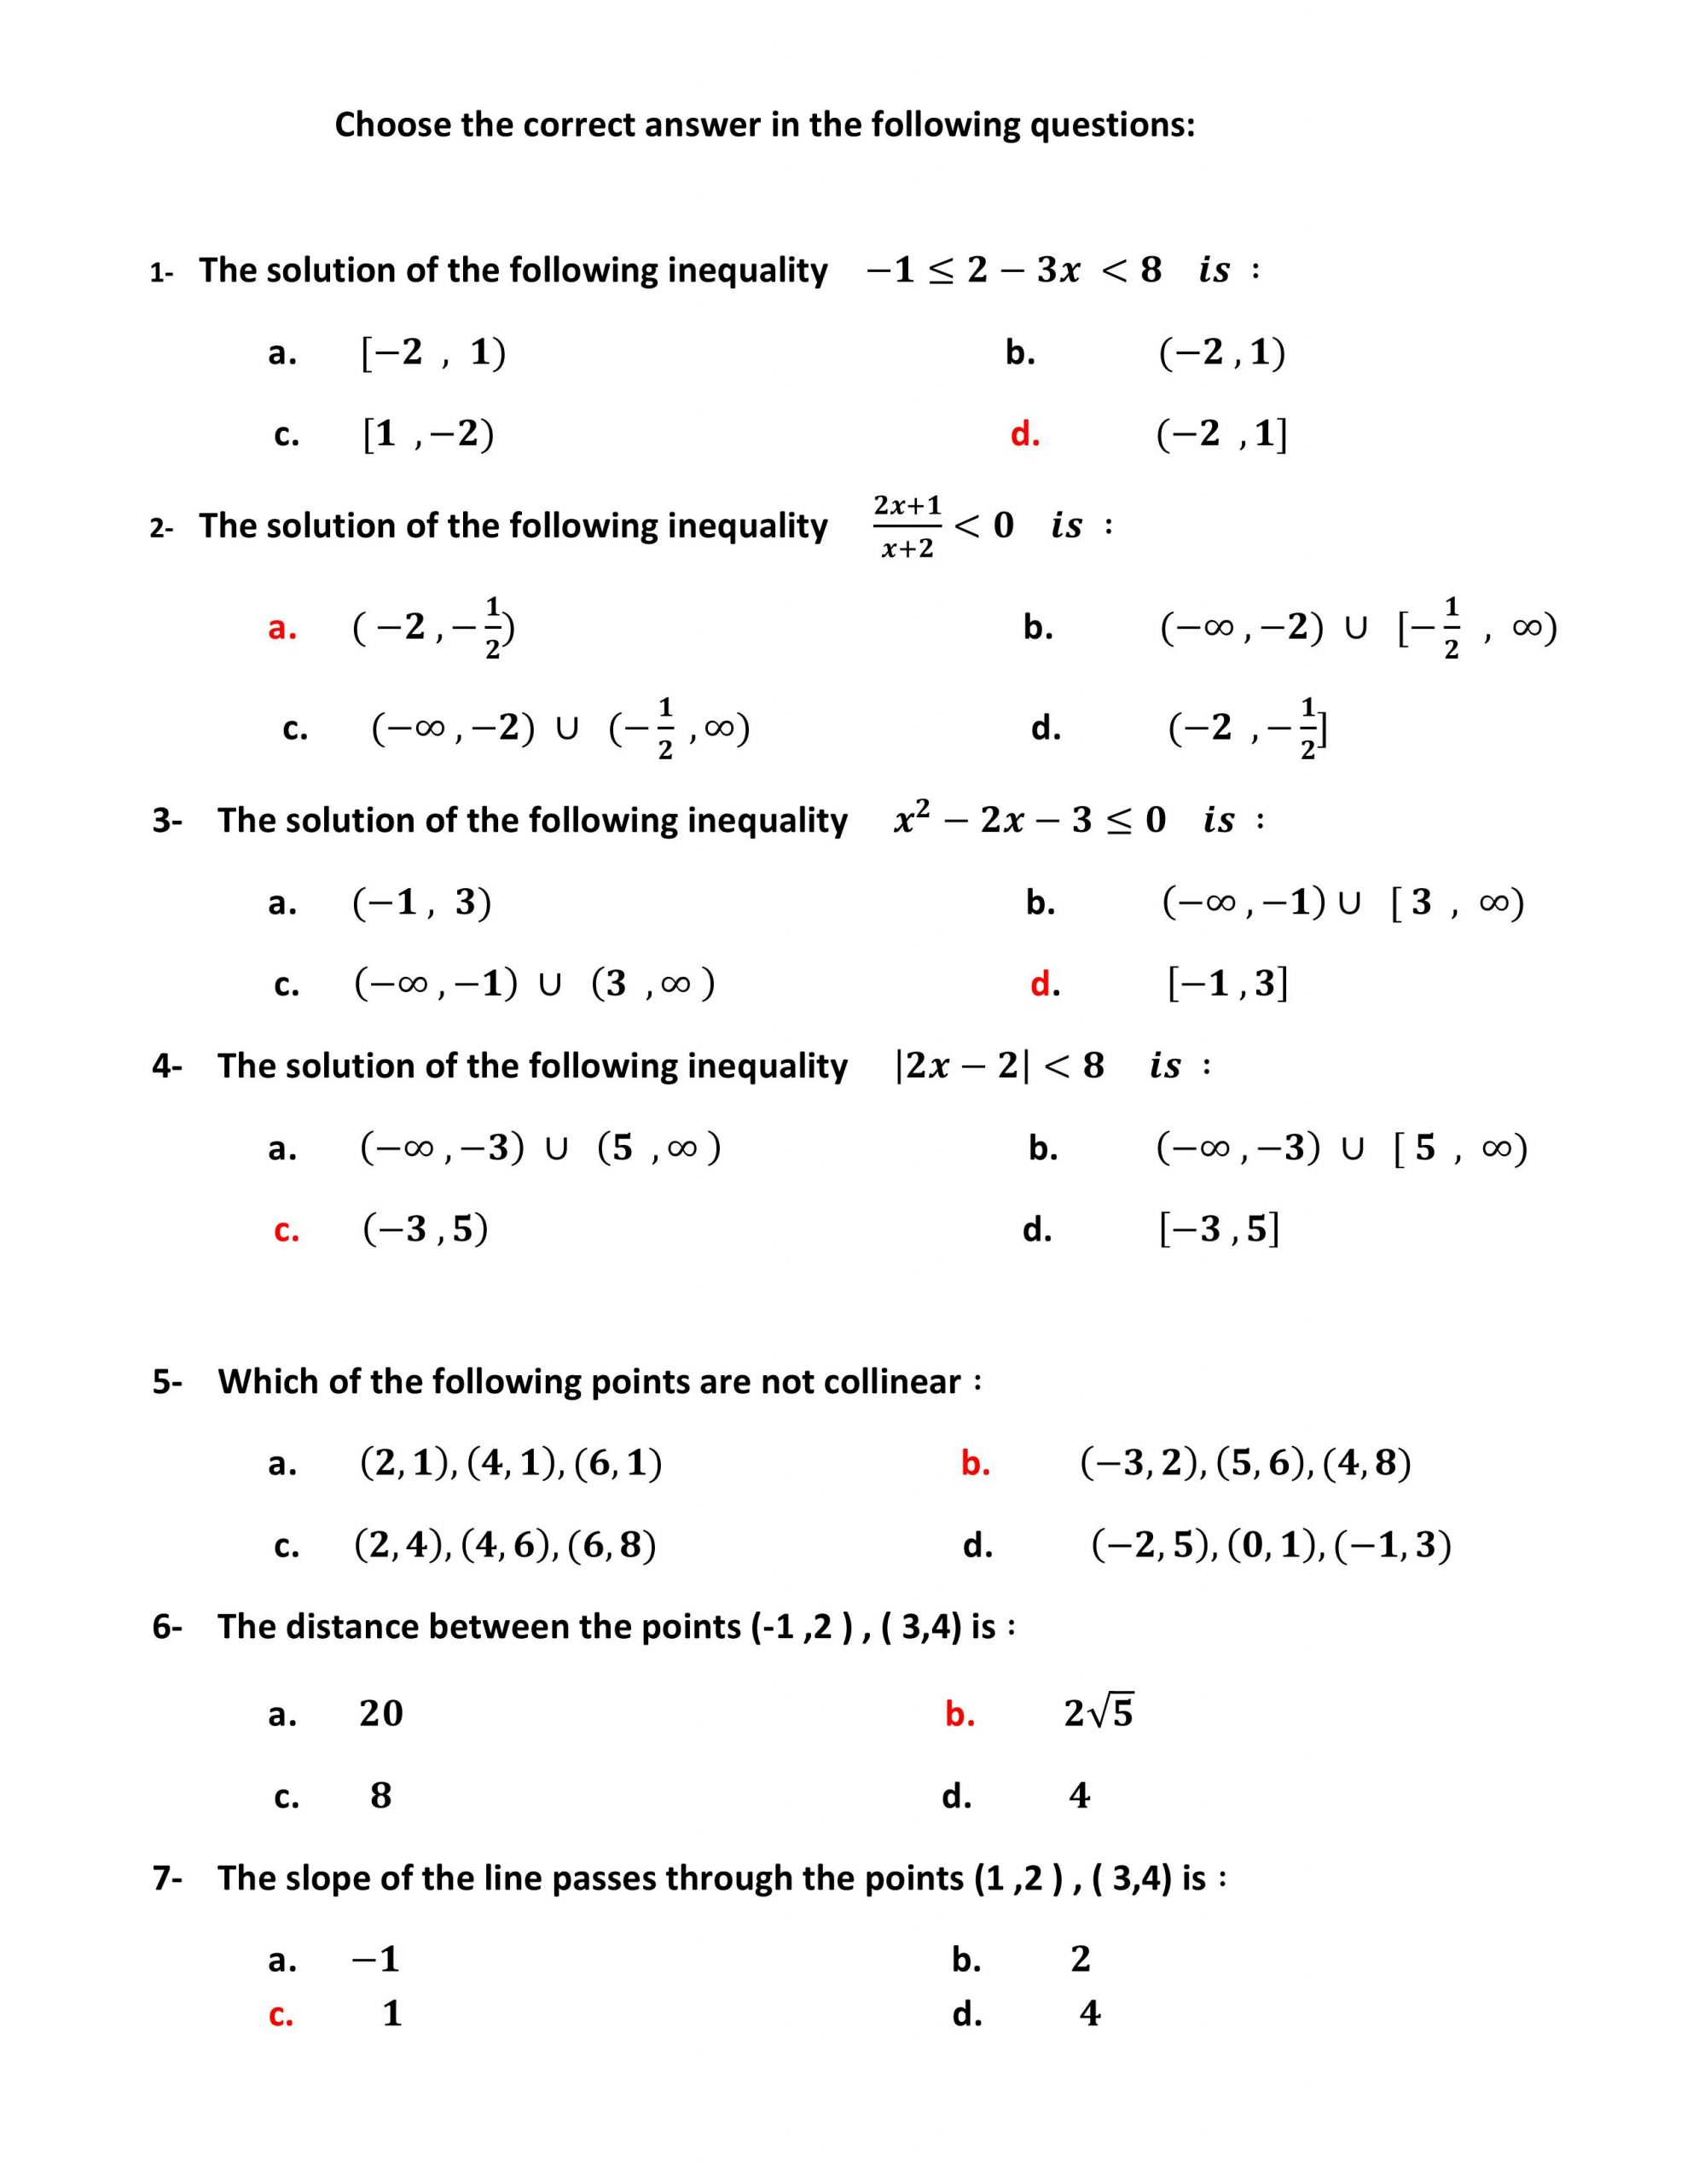 حل اوراق عمل مراجعة نهائية بالانجليزي الصف الثاني عشر متقدم مادة الرياضيات المتكاملة